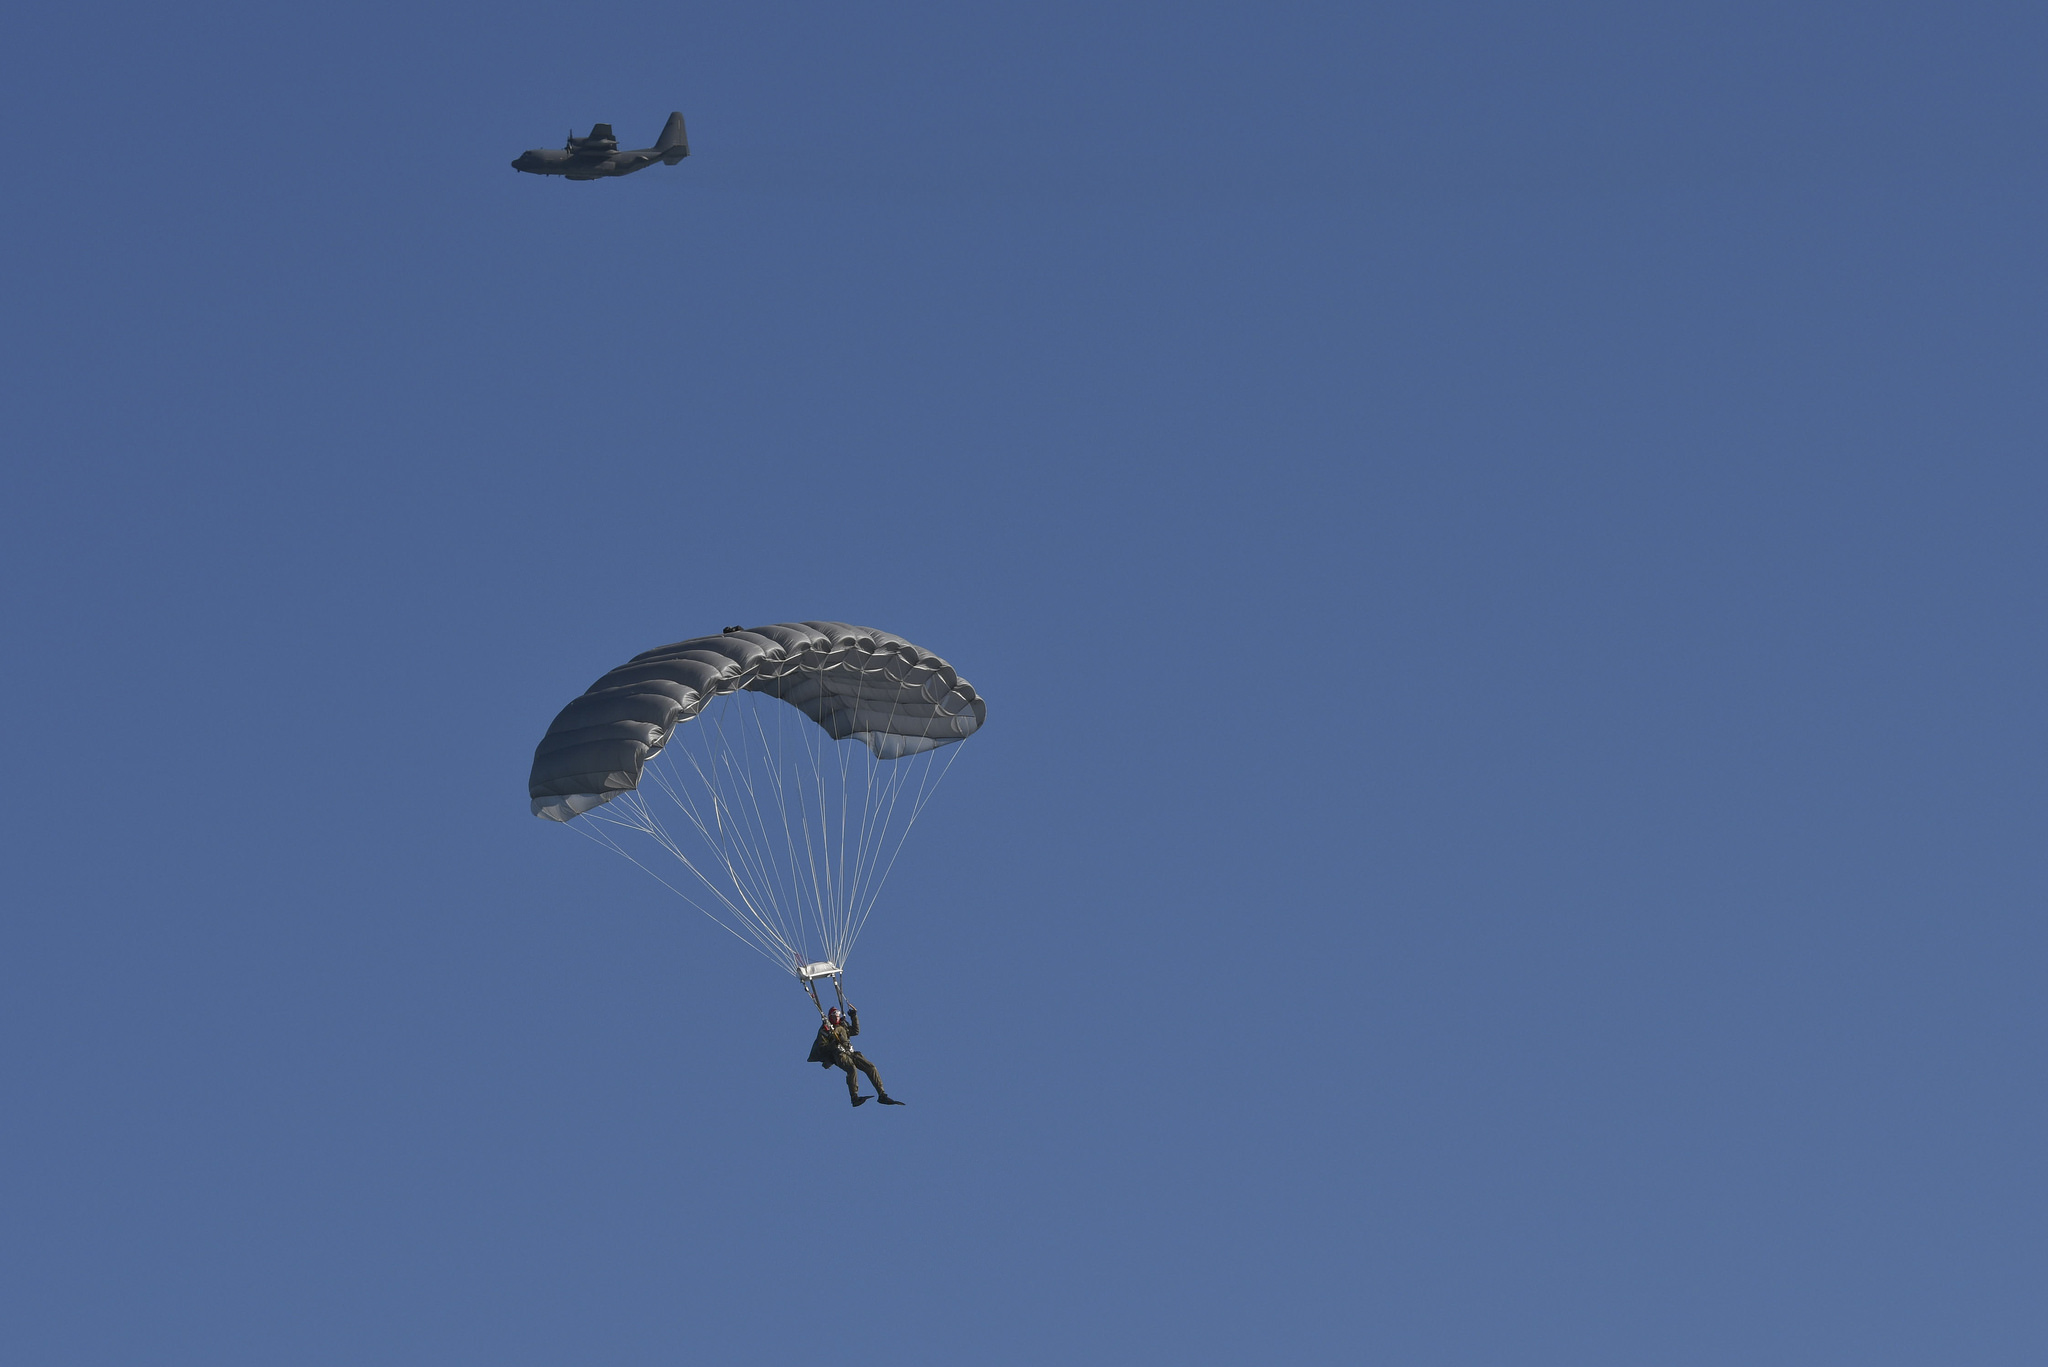 Le parachutiste a été pris par les vents avant d'atterrir. (Illustration) Wikimedia Commons/Junior Jumper